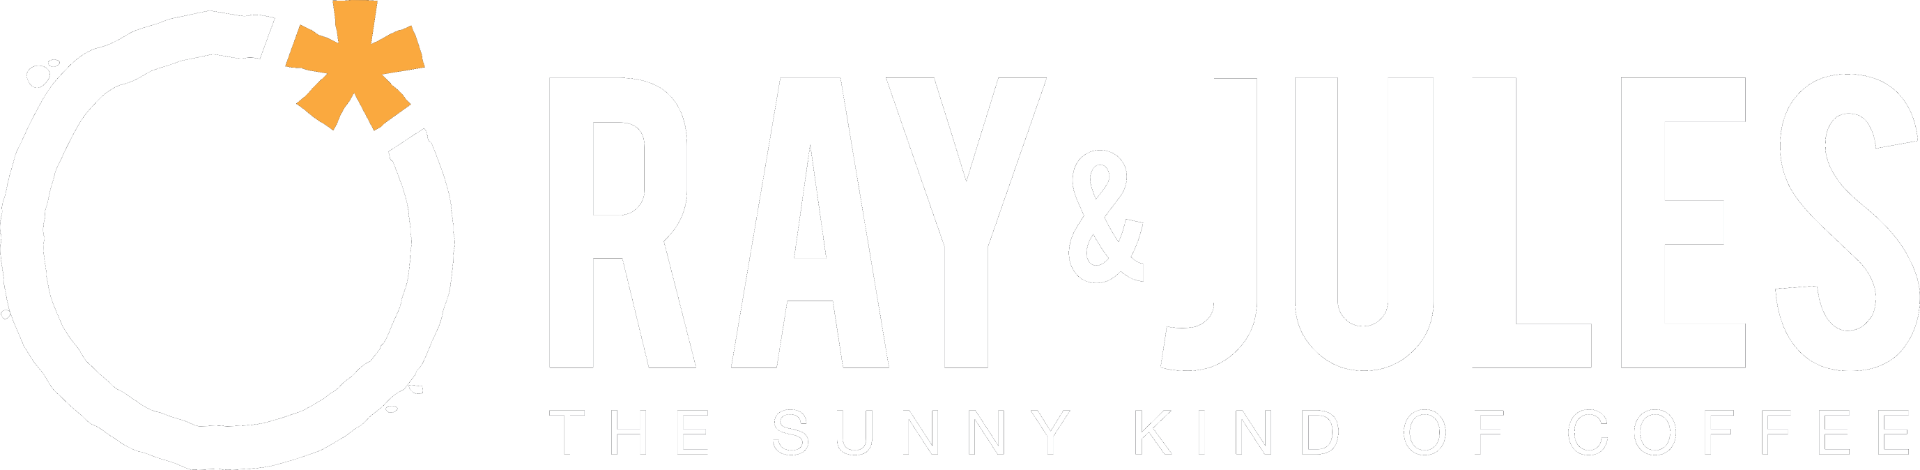 Ray & jules logo